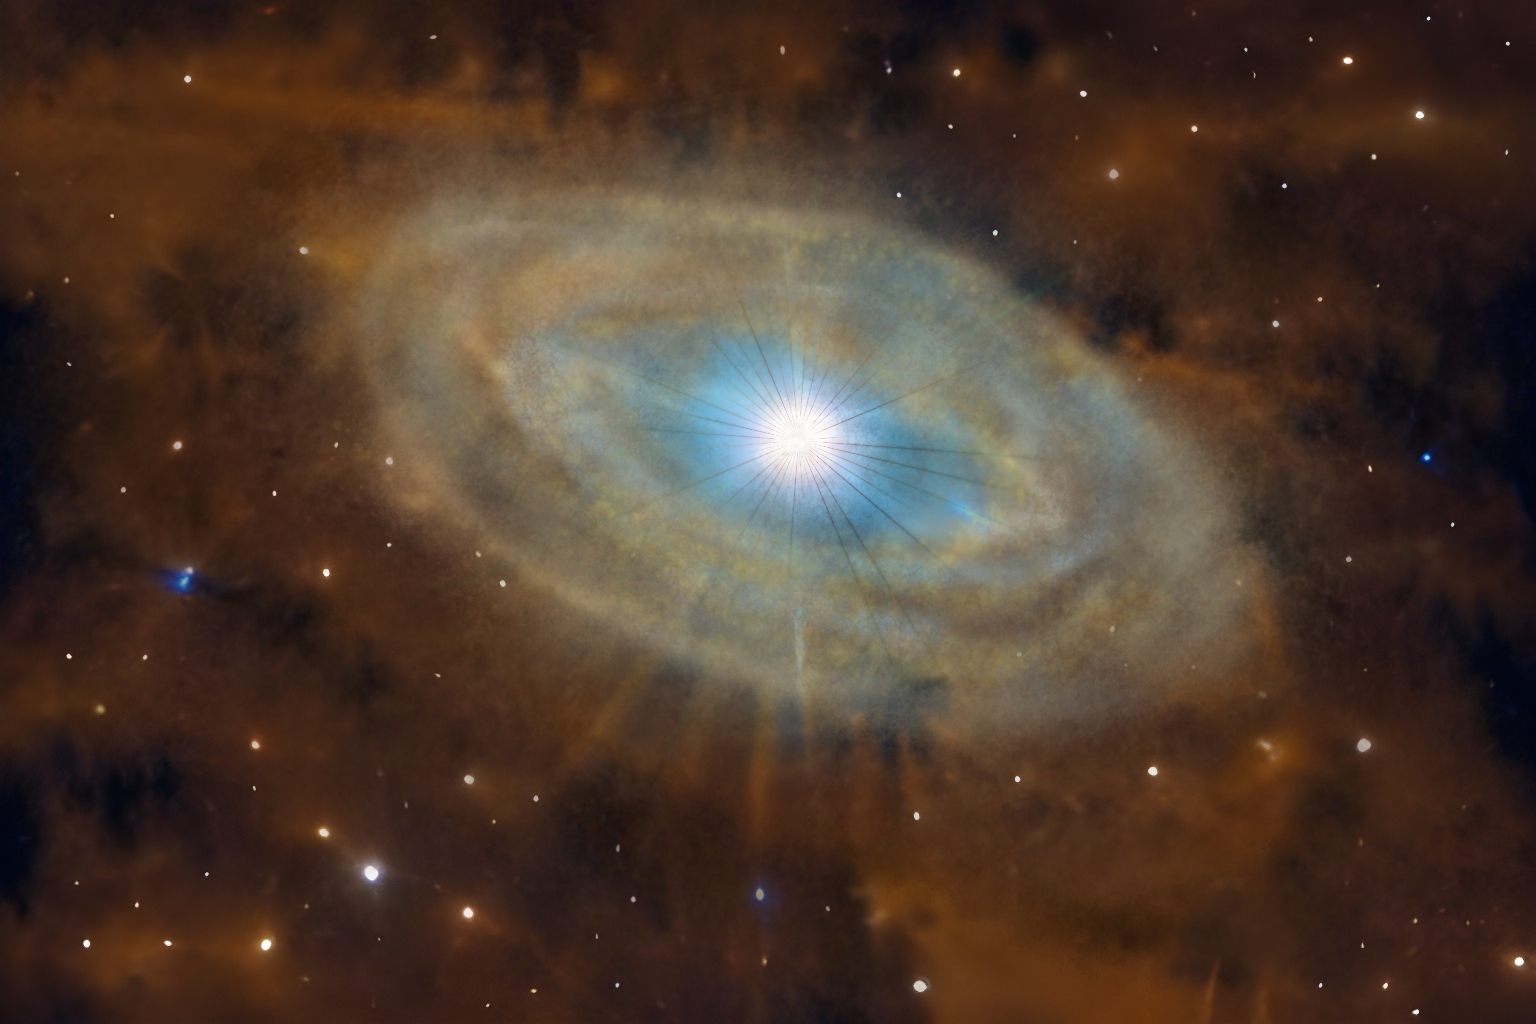 Una representación artística de una estrella B con un disco de gas y polvo a su alrededor. El color de la estrella central es azul, indicando que es una estrella de alta temperatura.